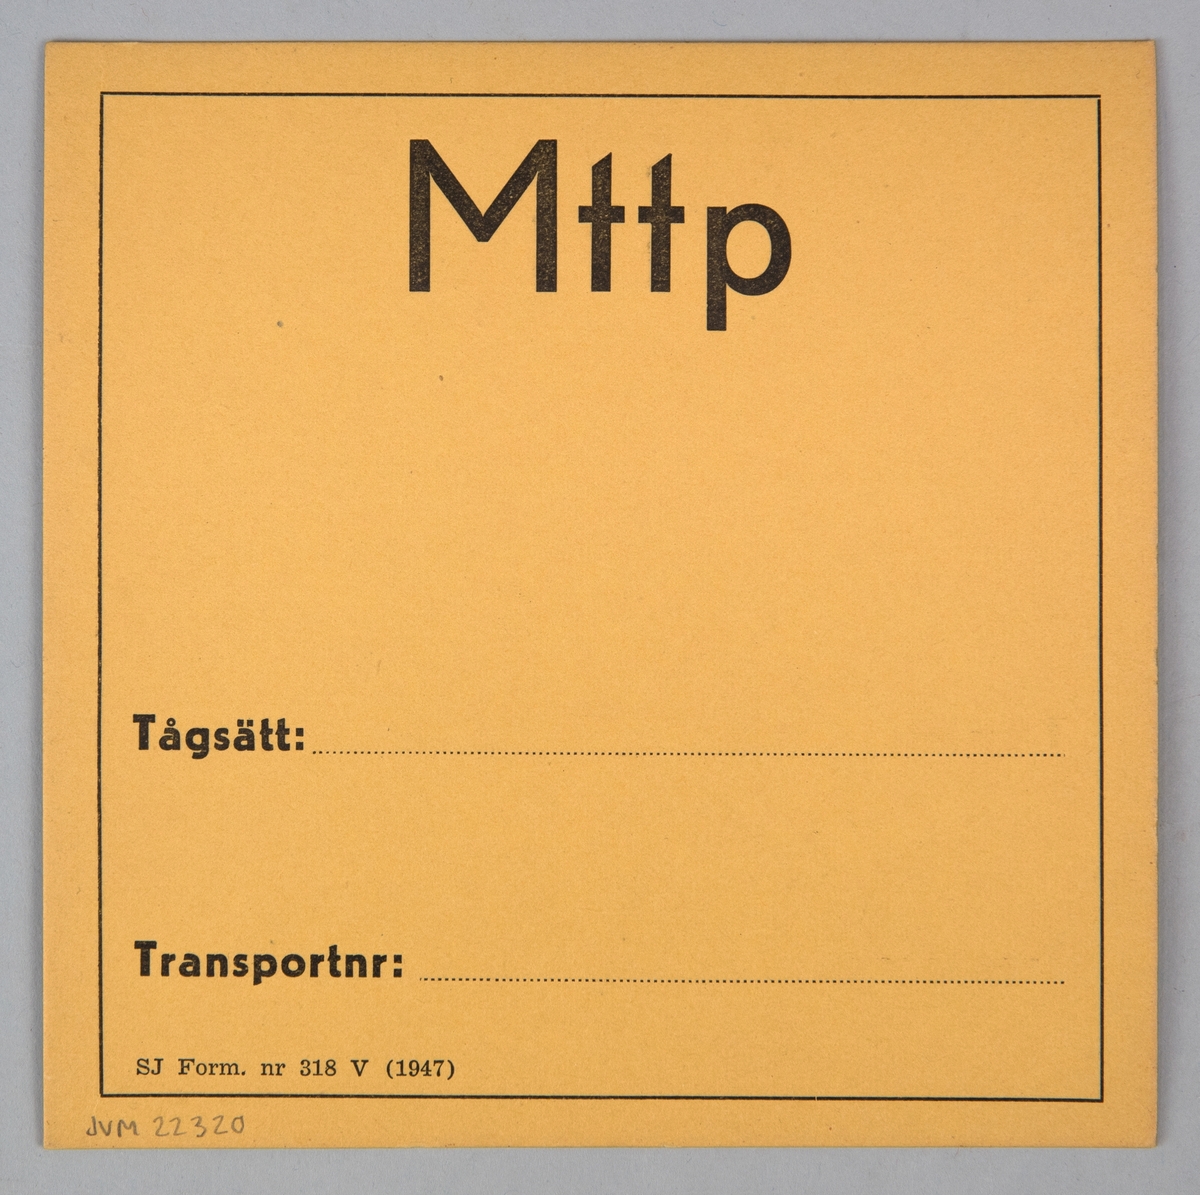 Kvadratiskt vagnskort av papper. På båda sidorna finns en tunn svart ram, innanför ramen står det tryckt i svart "Mttp", "Tågsätt", "Transportnr" och "SJ Form. nr 318 V (1947)".
På ena sidan står det skrivet med svart penna "Militär" vid fältet för Tågsätt.